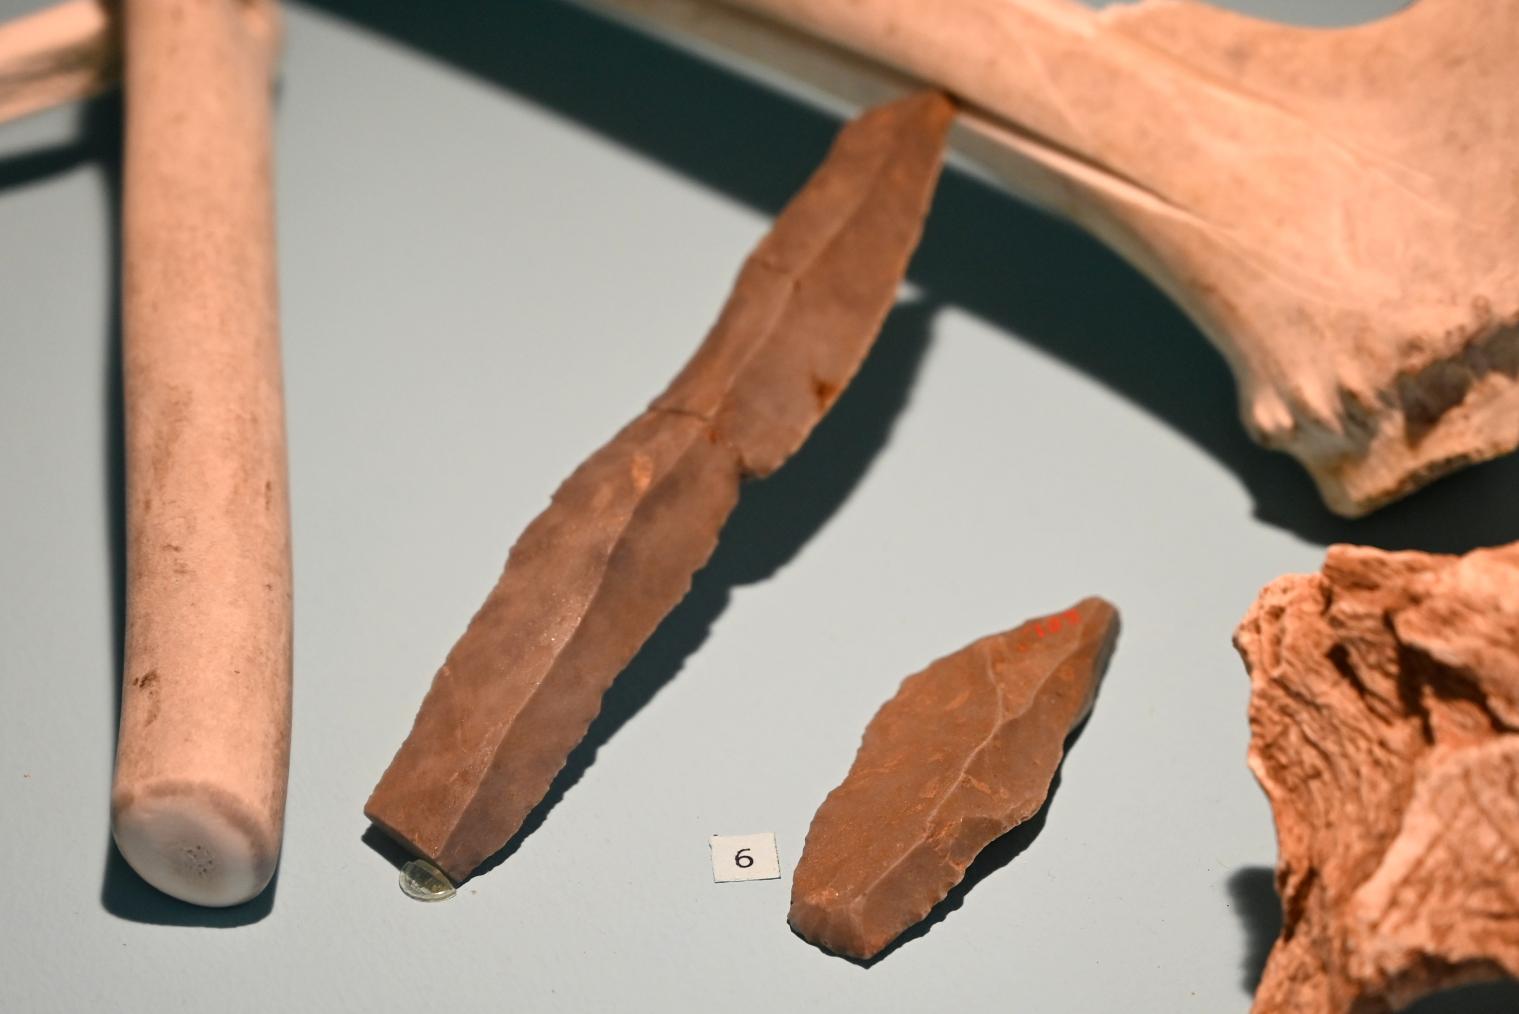 Stichel zu Geweihbearbeitung, 13000 v. Chr.